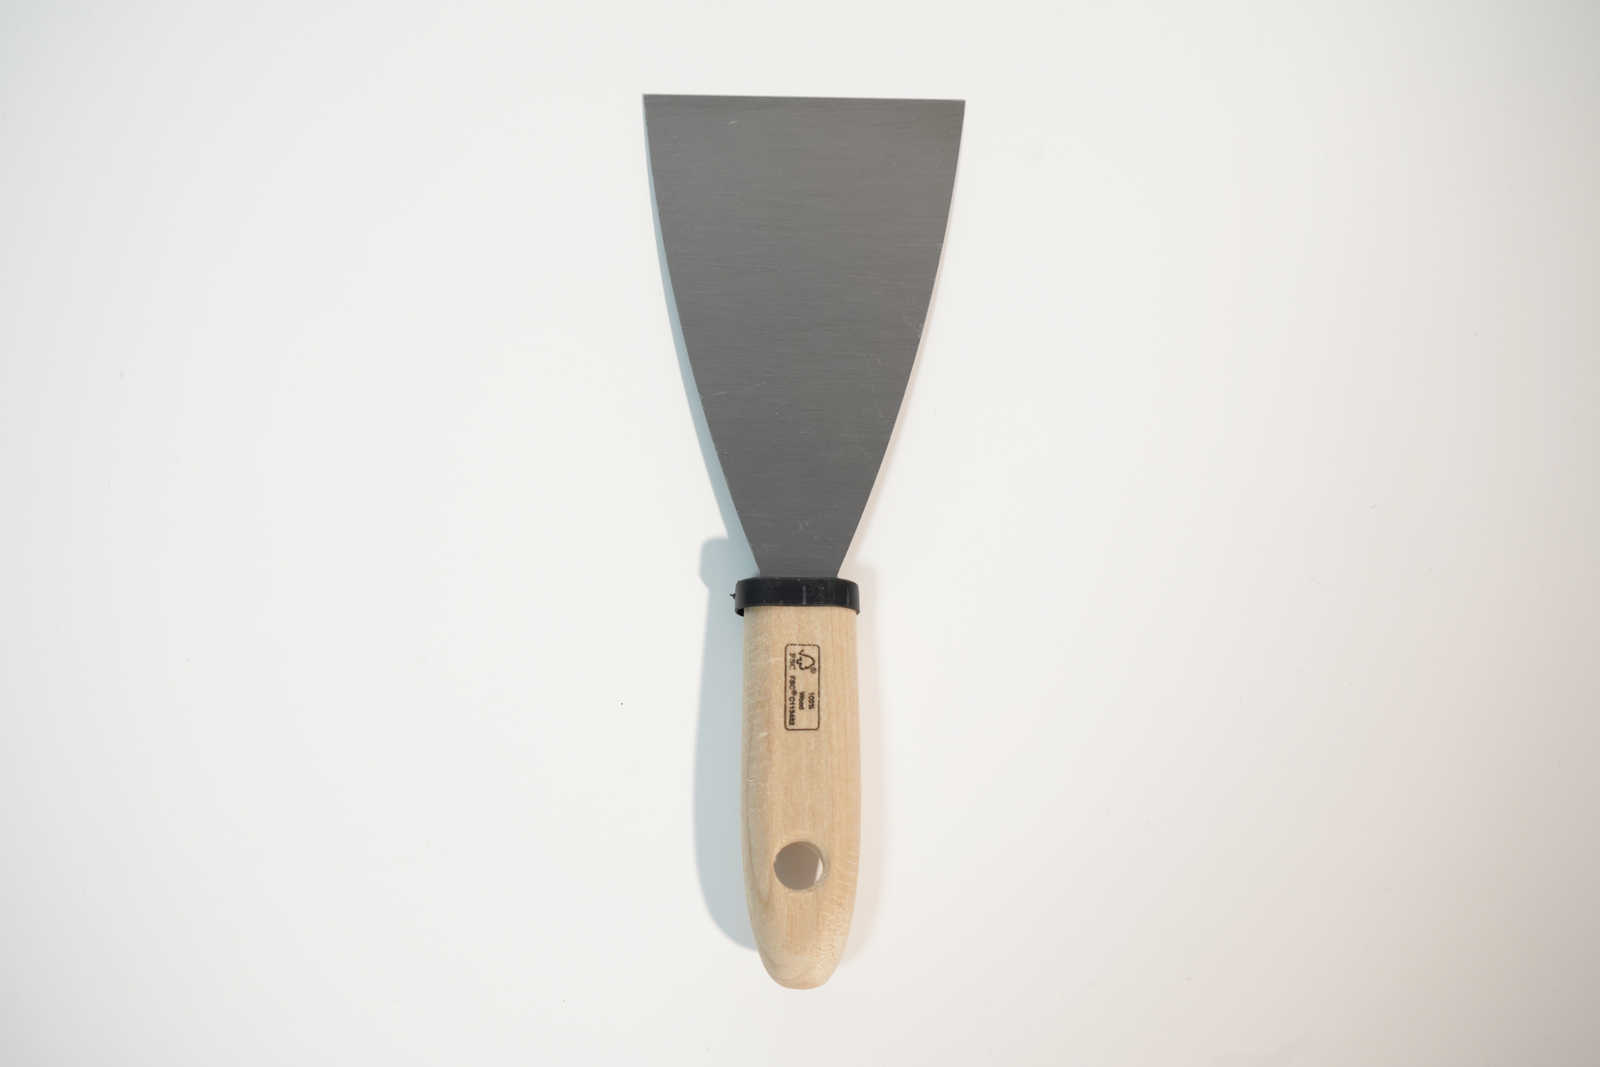             Spatule de peintre 80mm avec lame en acier flexible & manche en bois
        